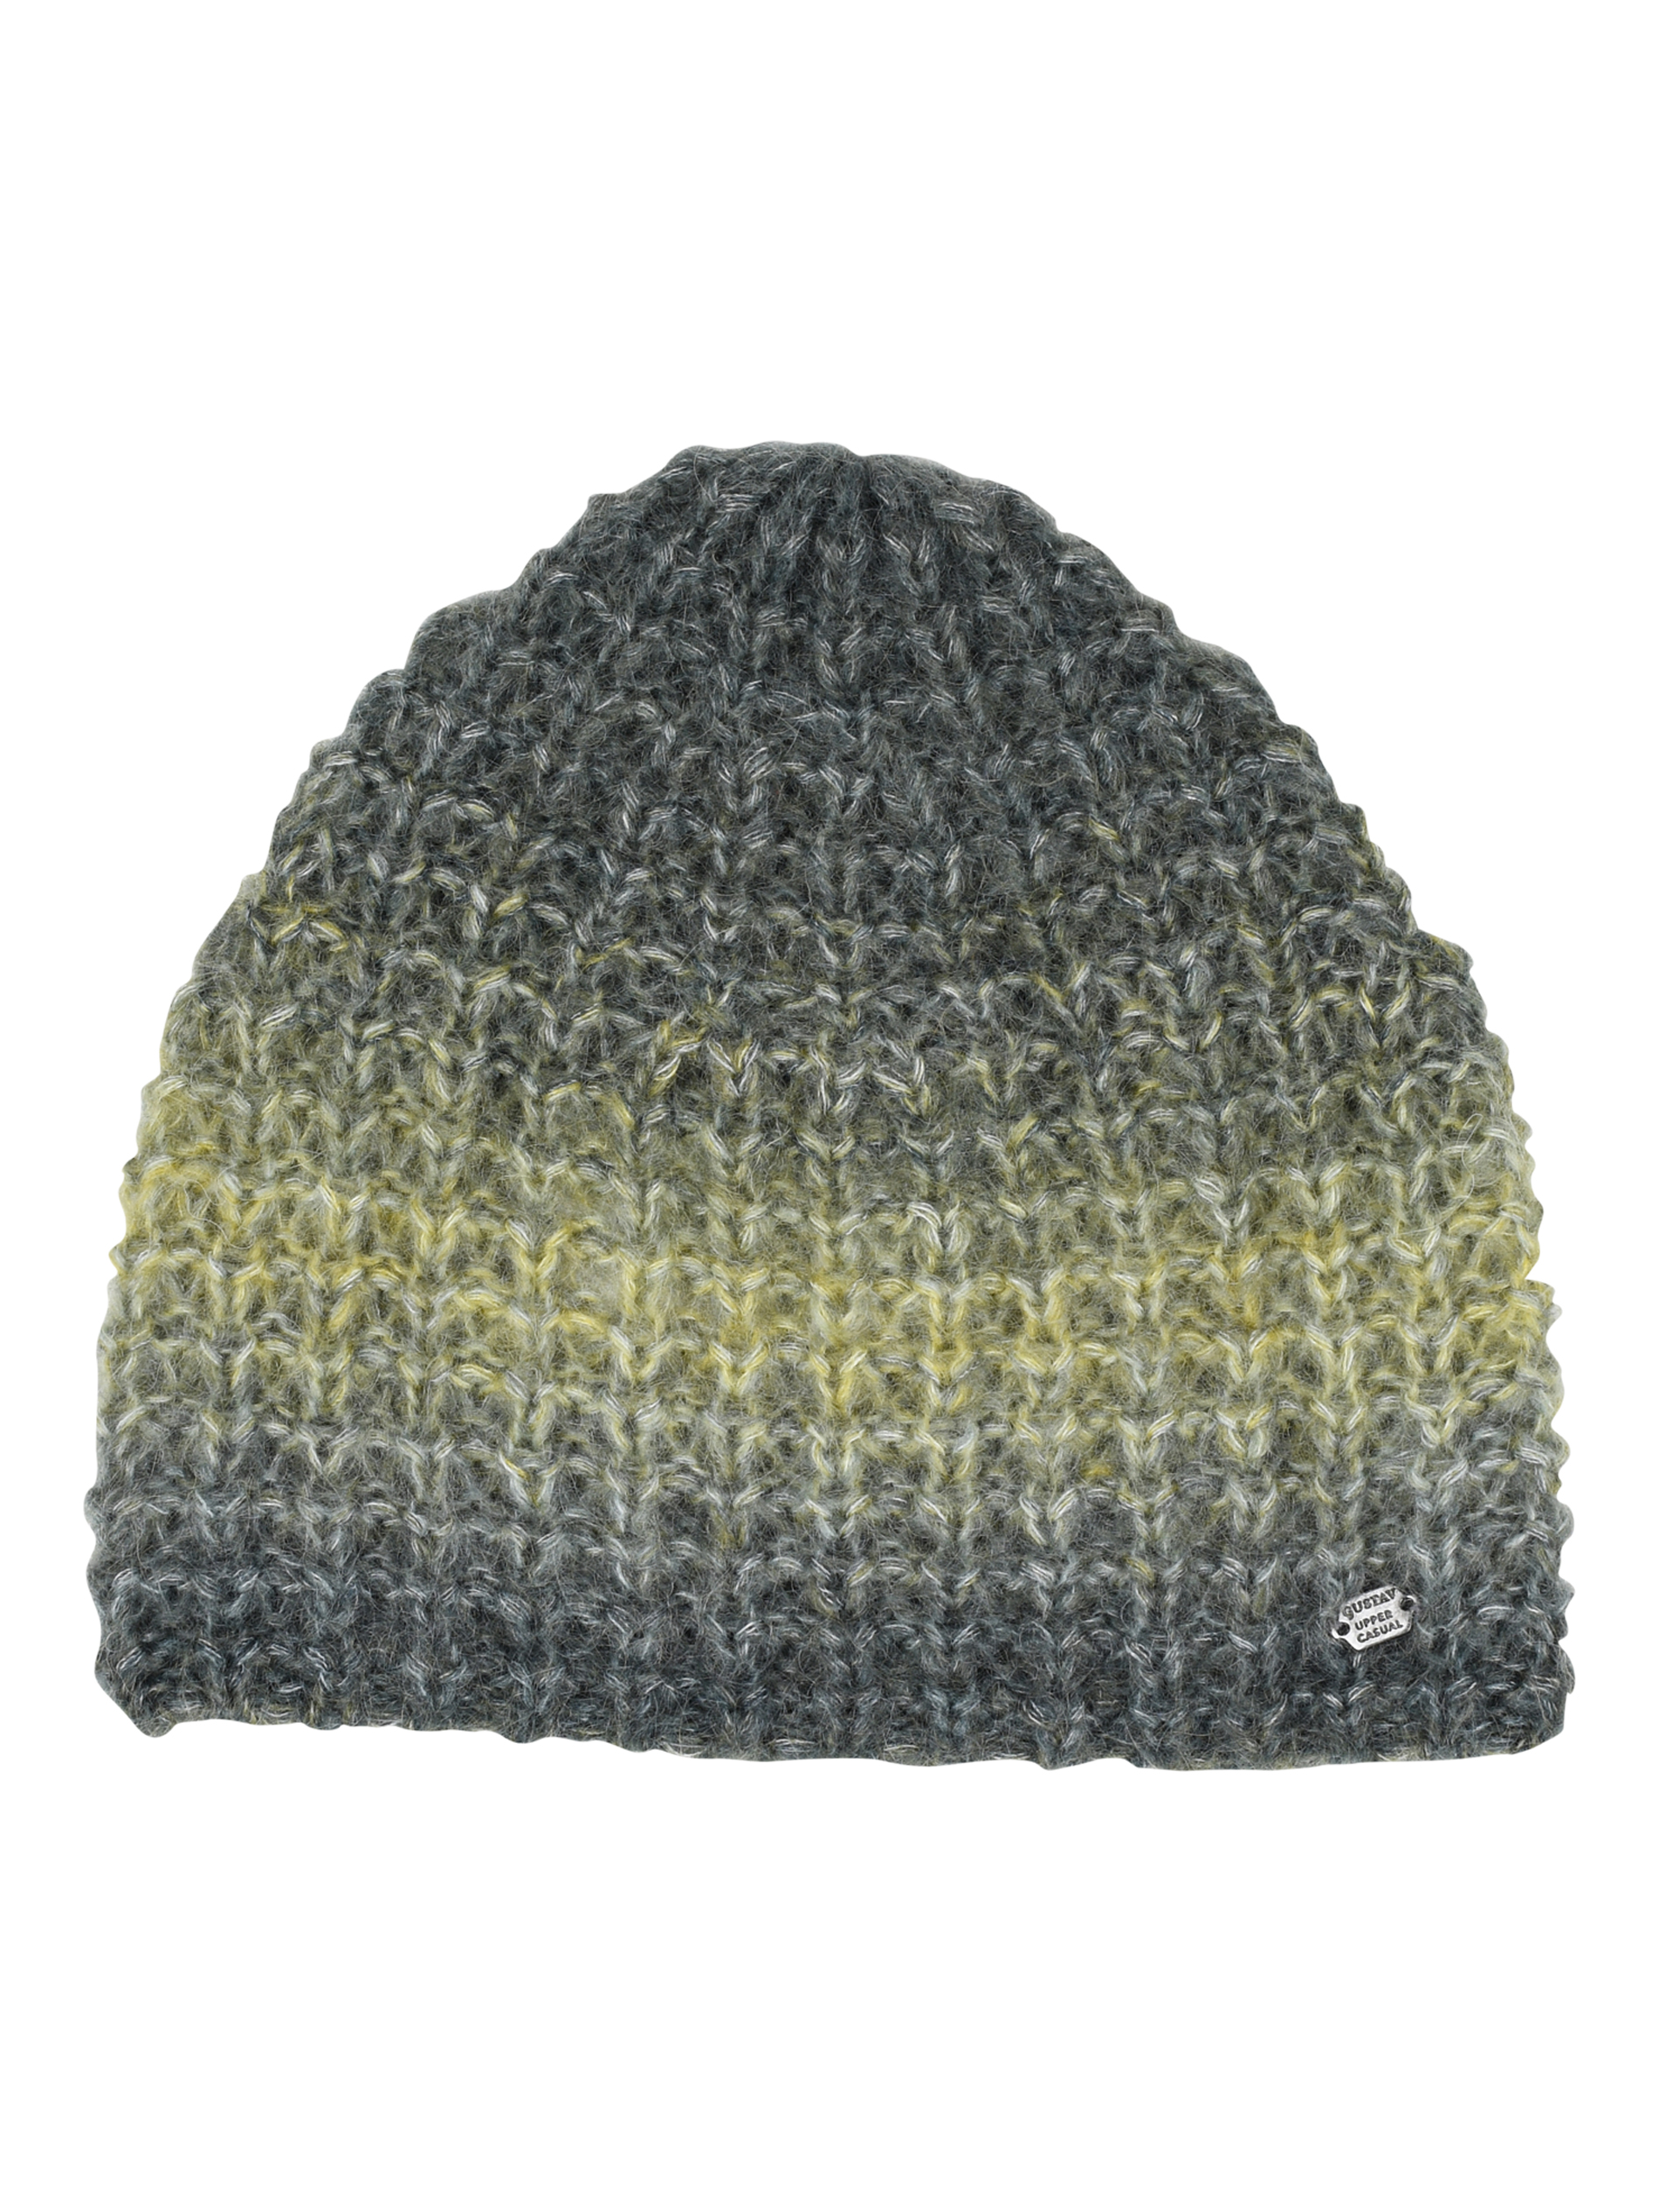 Gustav Edona Knit Hat